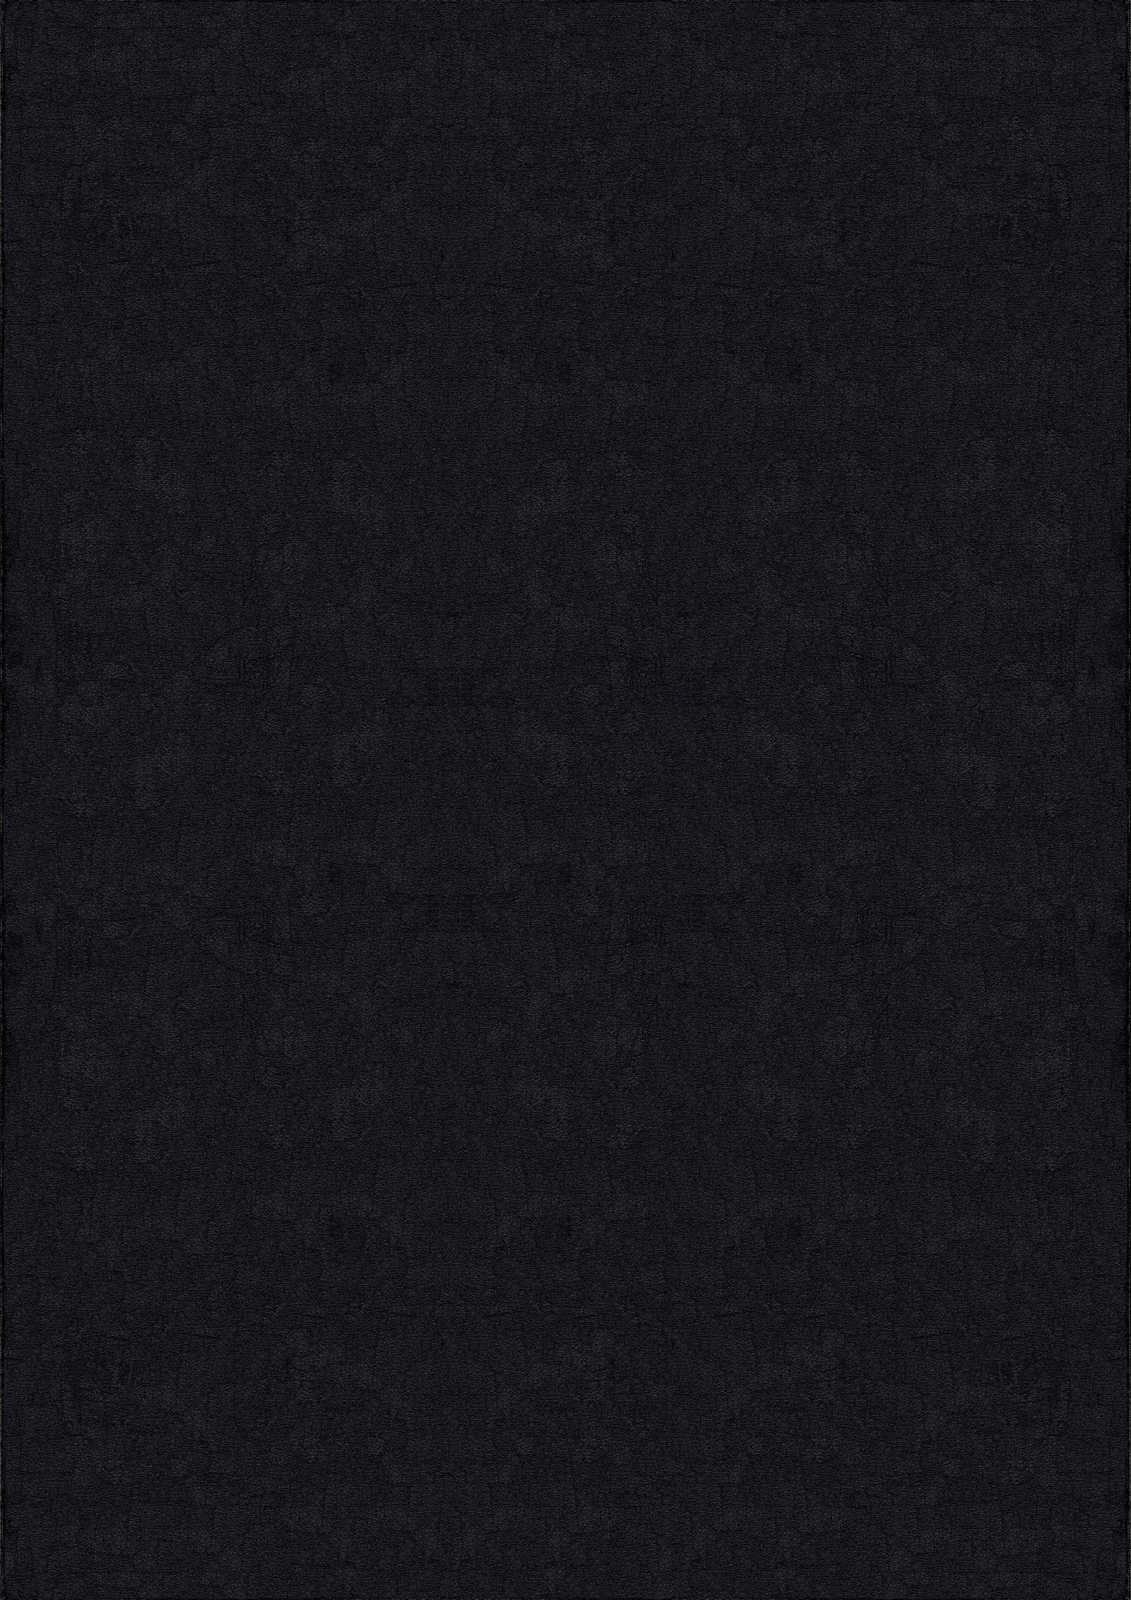             Velvety high pile carpet in black - 230 x 160 cm
        